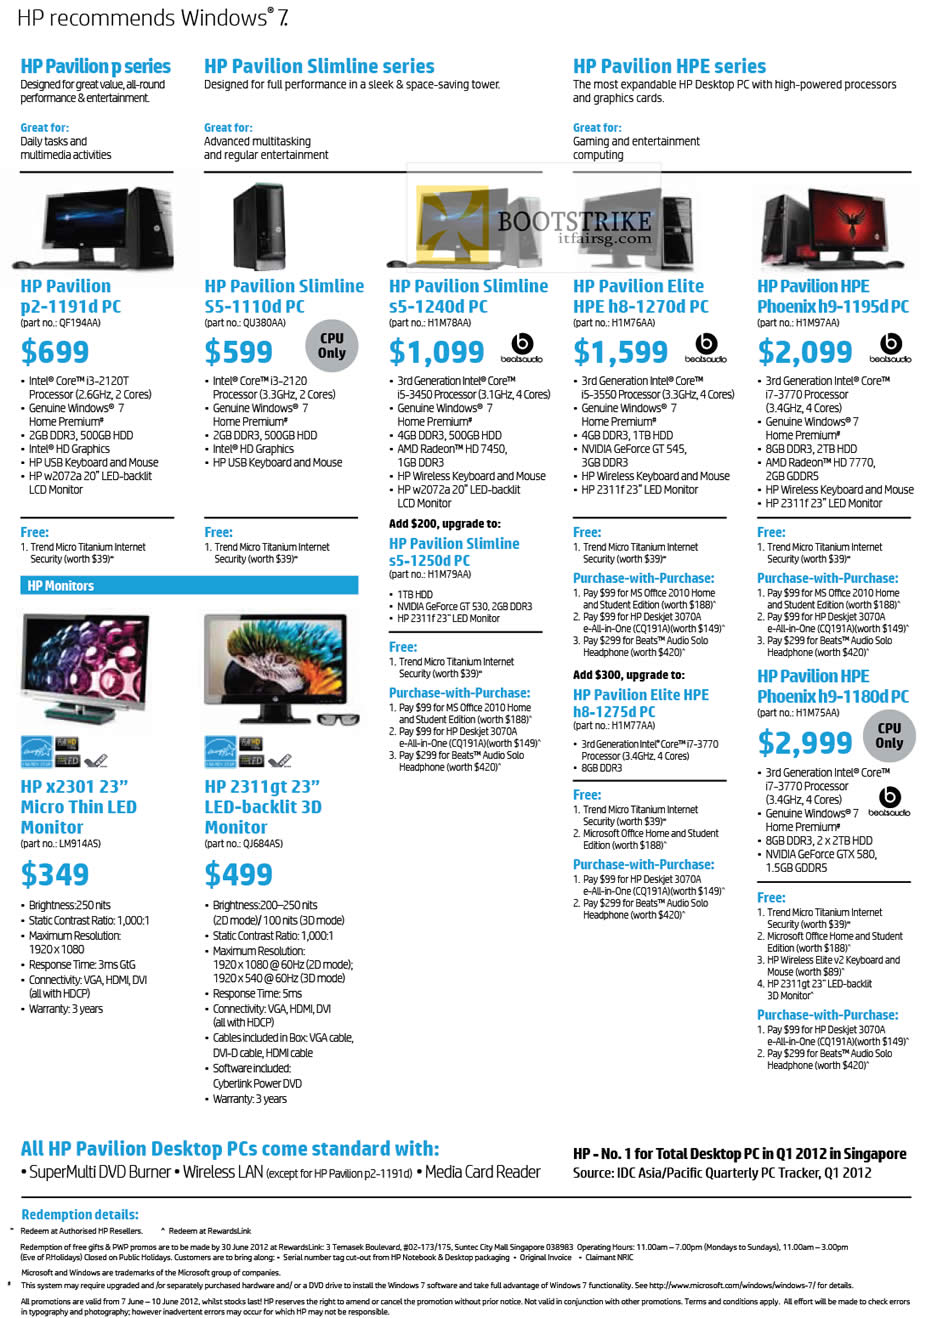 PC SHOW 2012 price list image brochure of HP Desktop PC Pavilion P2-1191d, Slimline S5-1110d, S5-1240d, S5-1250d, Elite HPE H8-1270d, H8-1275d, Phoenix H9-1195d, H9-1180d, X2301 LED Monitor, 2311gt